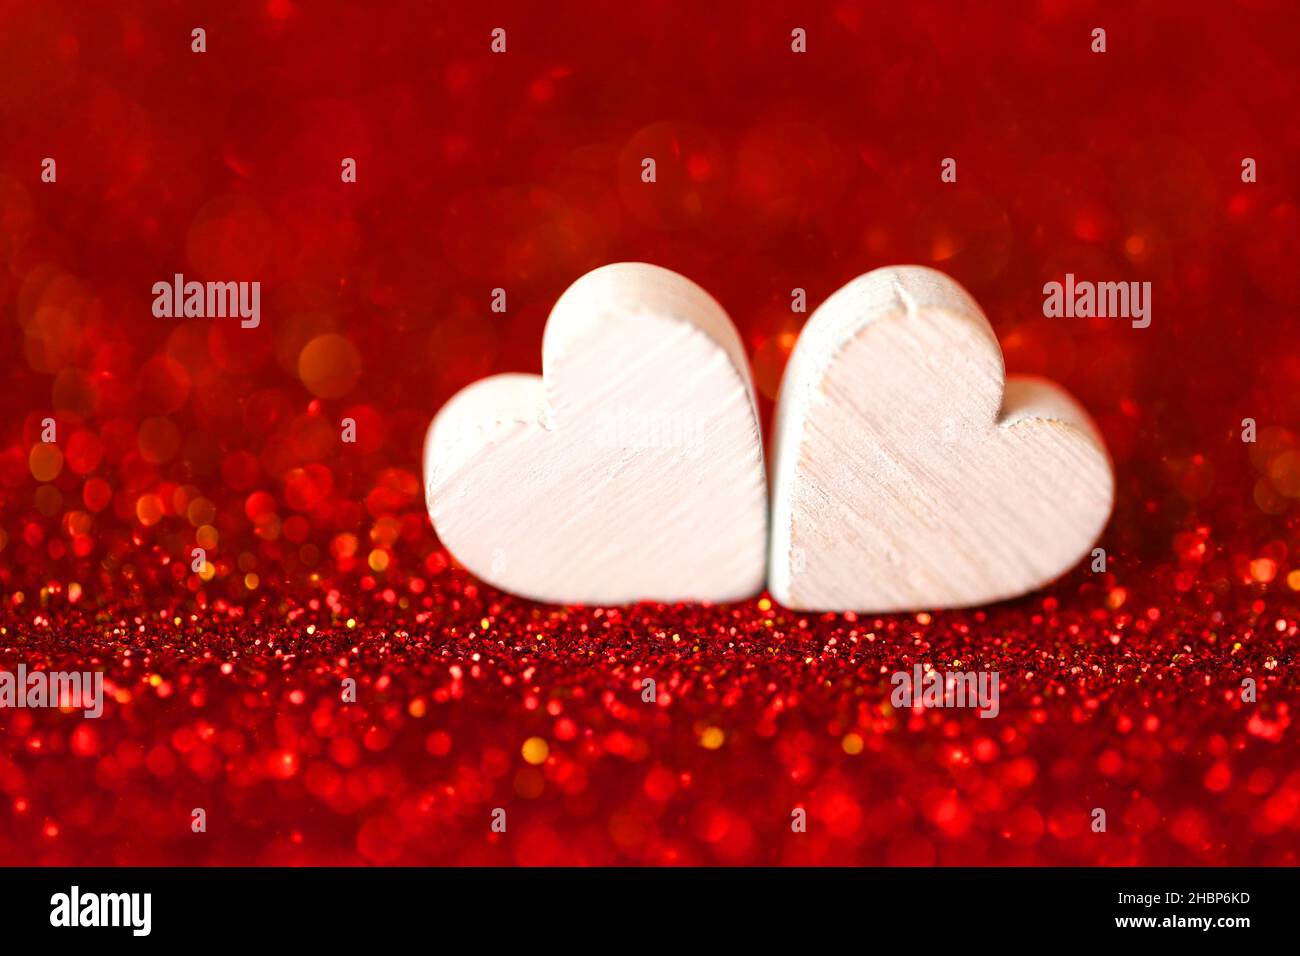 Love Concept.San Valentino. Due cuori bianchi su sfondo glitterato. Sfondo del giorno di San Valentino in toni rossi.simbolo d'amore Foto Stock